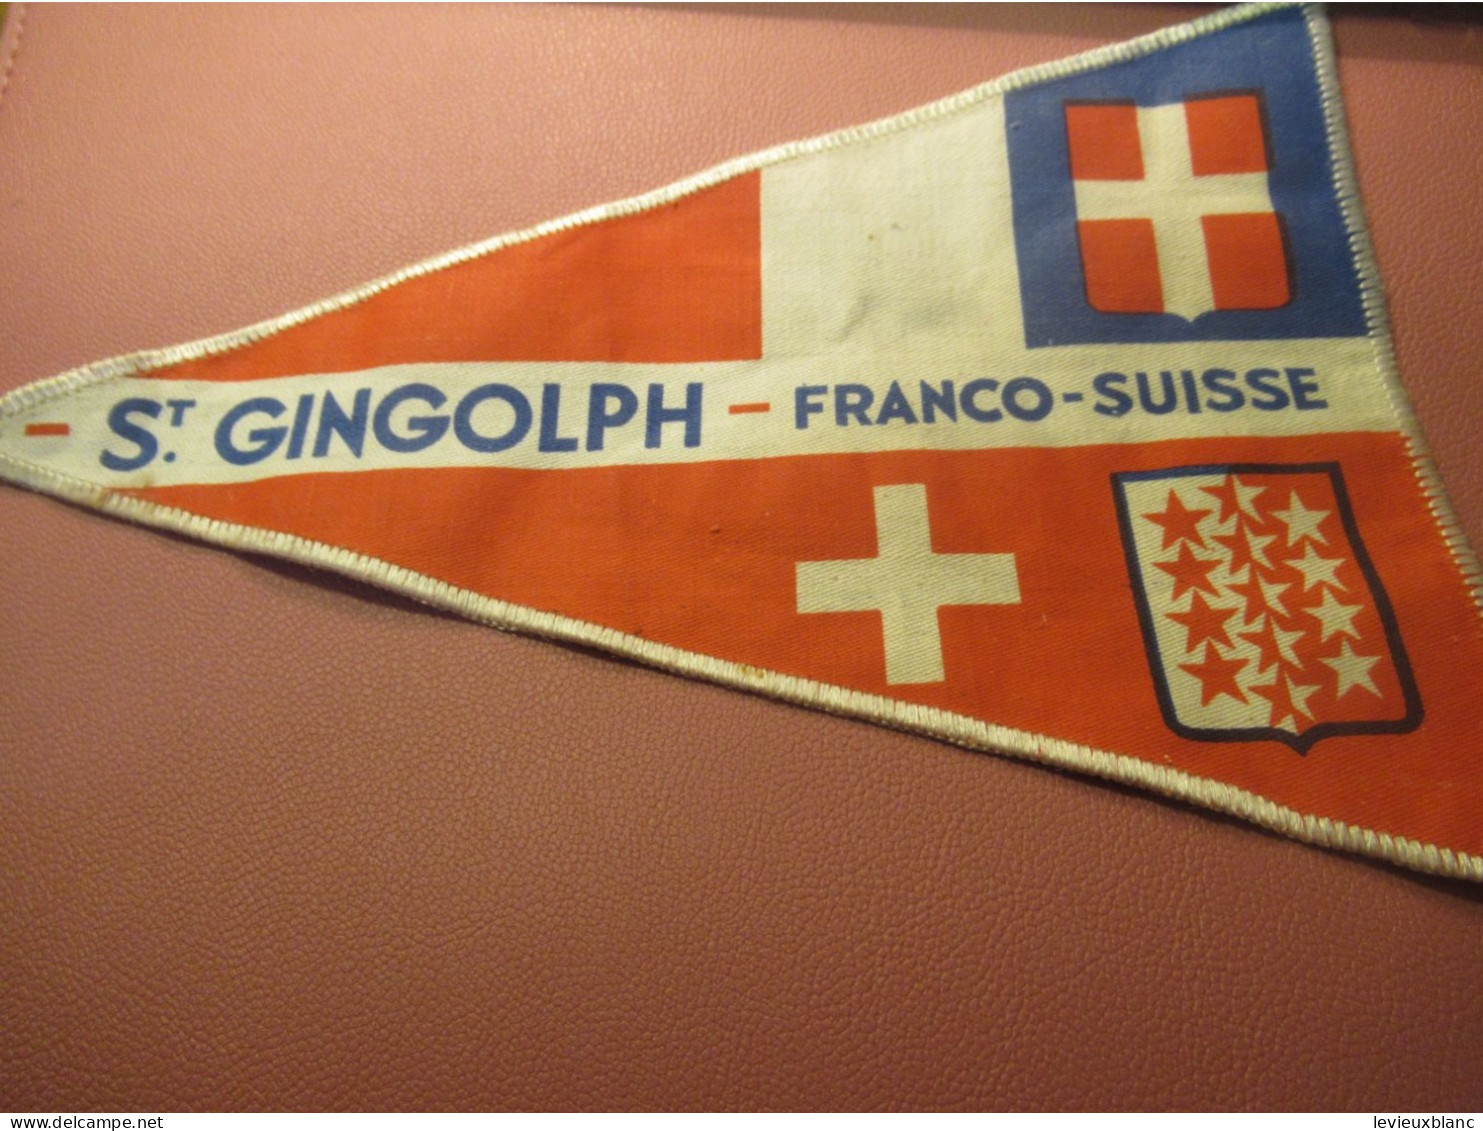 Fanion Touristique Ancien / St GINGOLPH - Franco-Suisse /Vers 1950                 DFA69 - Banderas